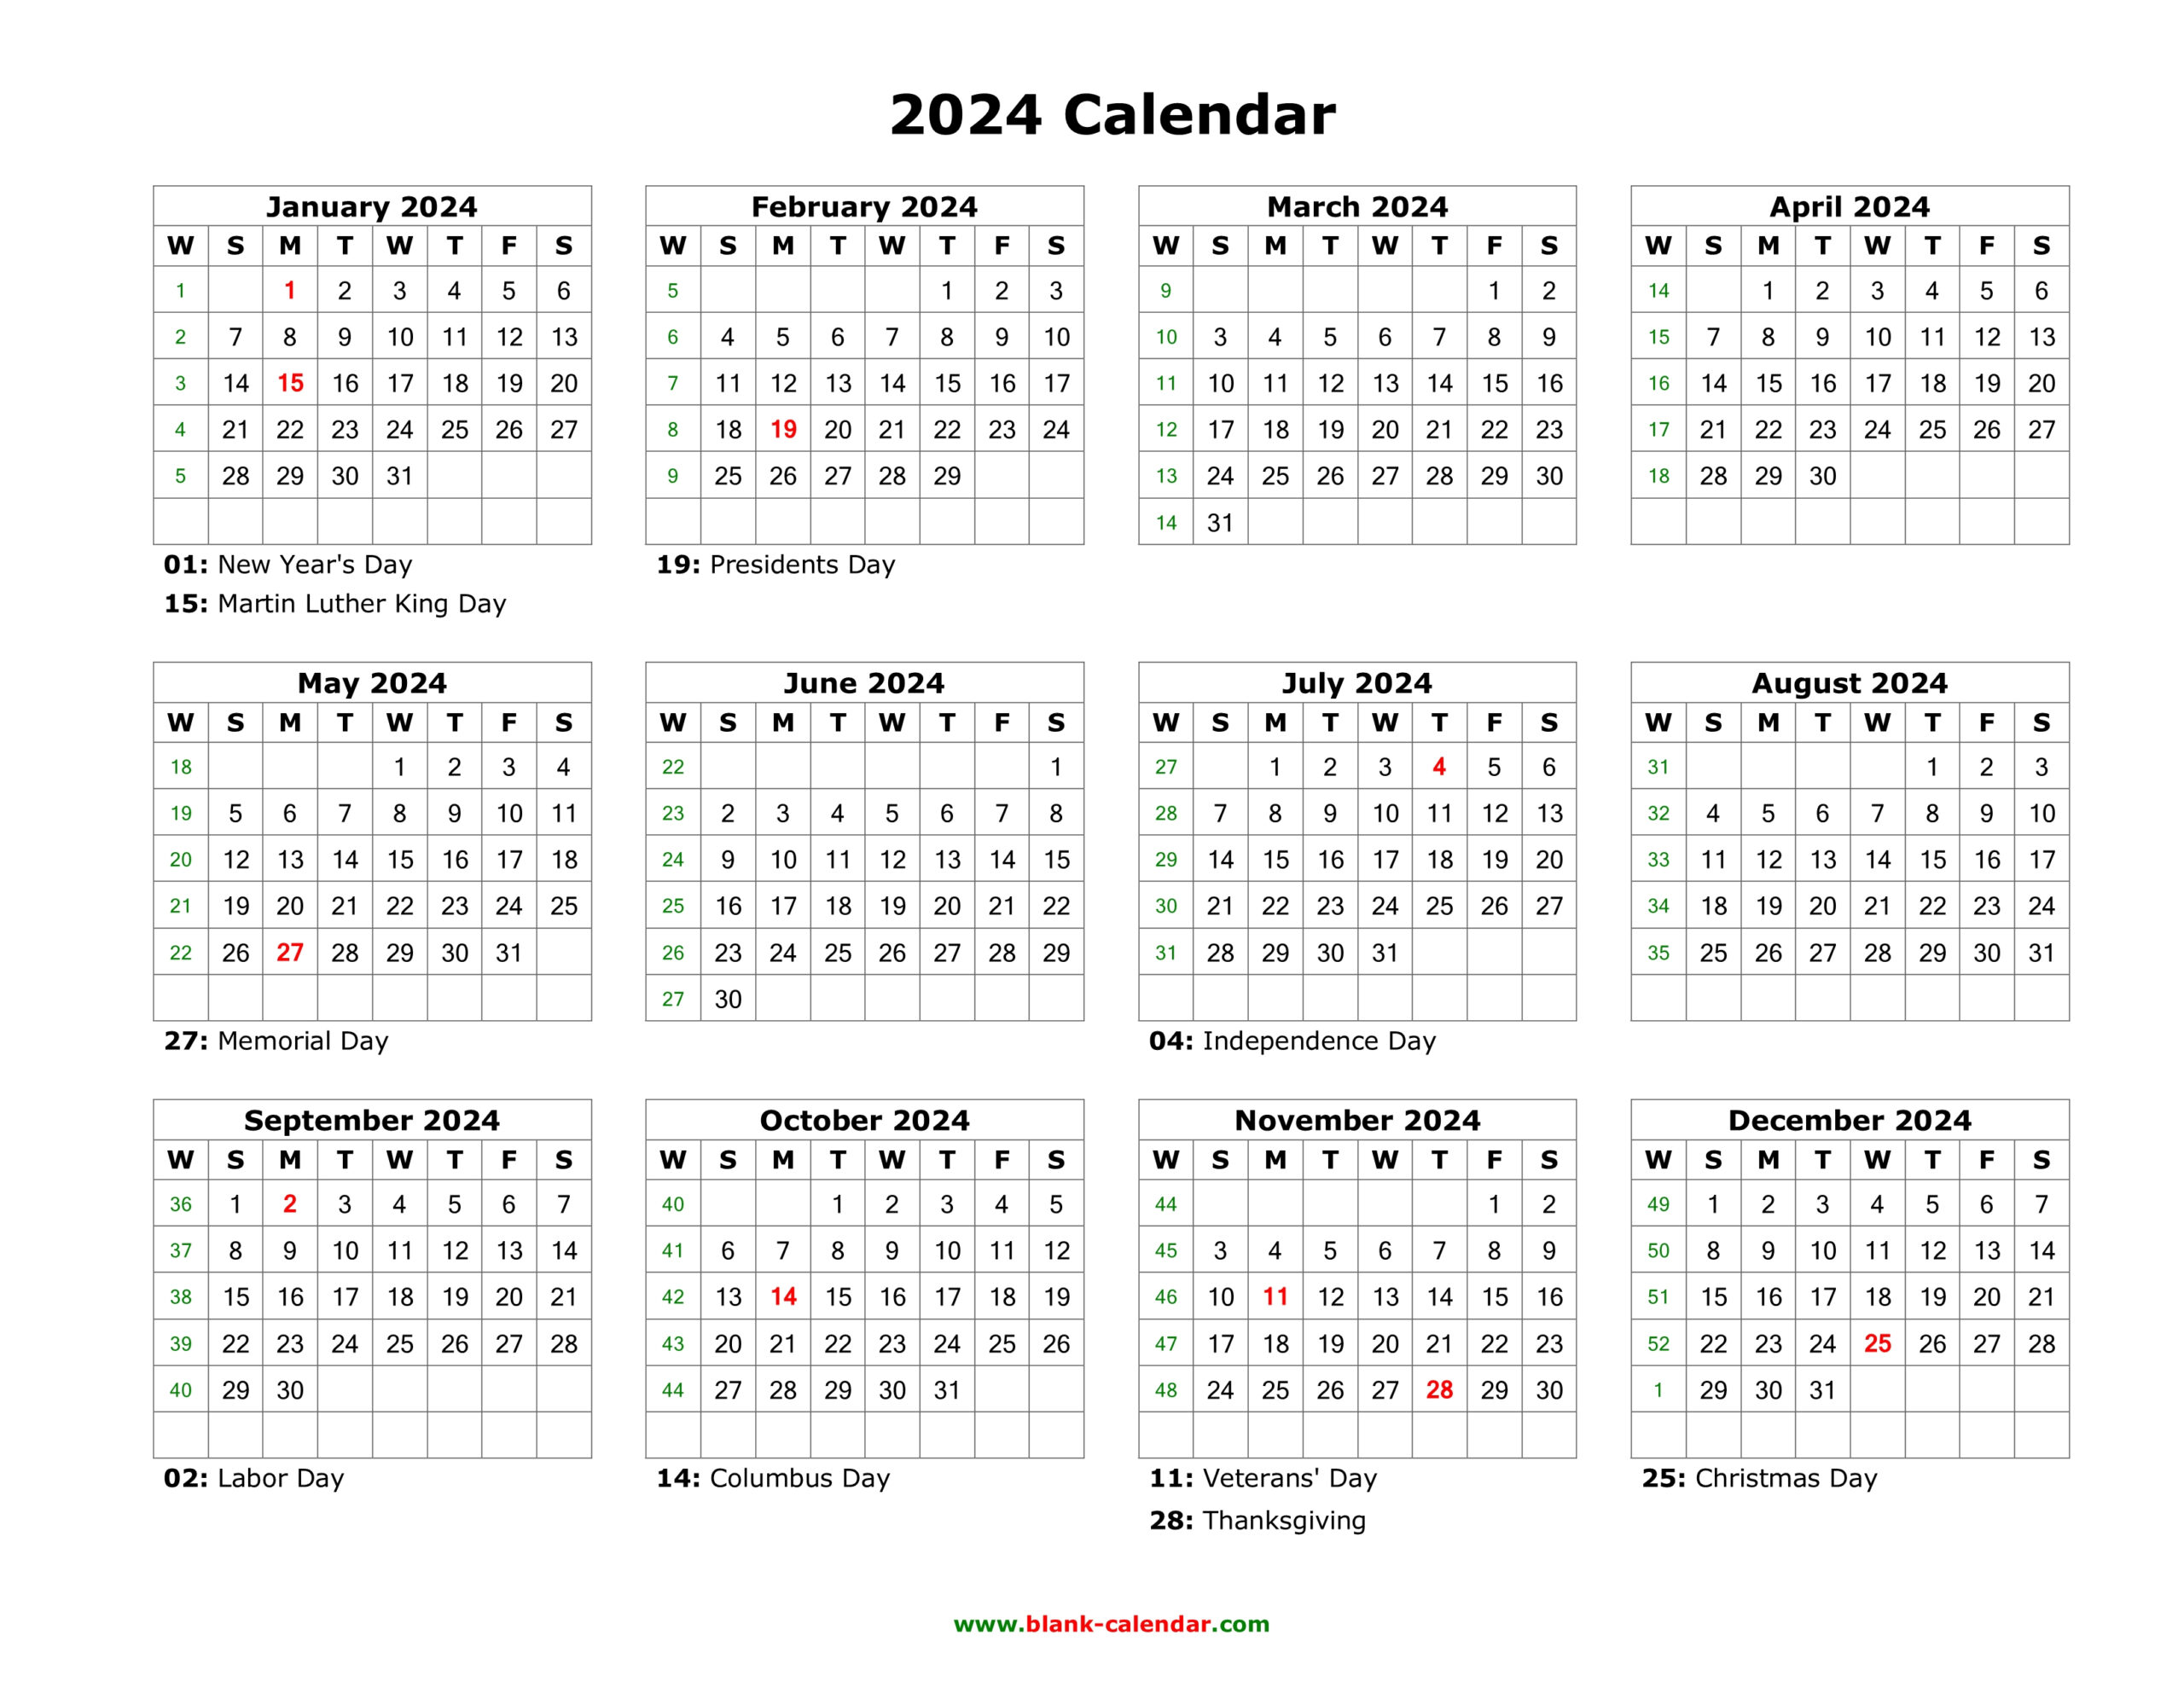 Blank Calendar 2024 | Free Download Calendar Templates for Editable Printable Calendar 2024